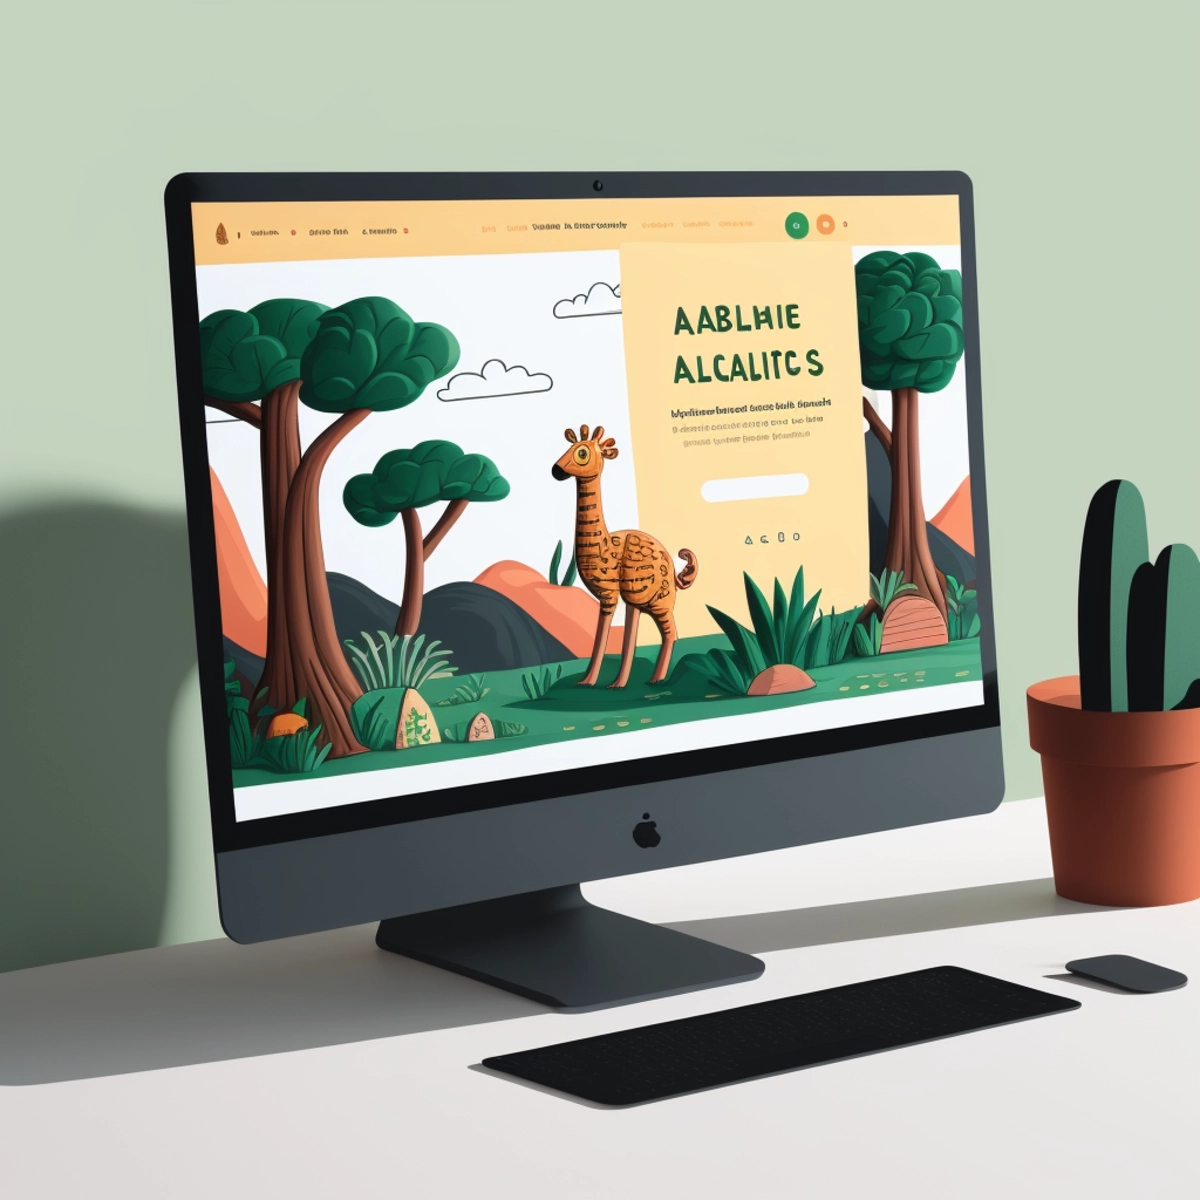 Um site educacional no monitor, incorporando ilustrações lúdicas